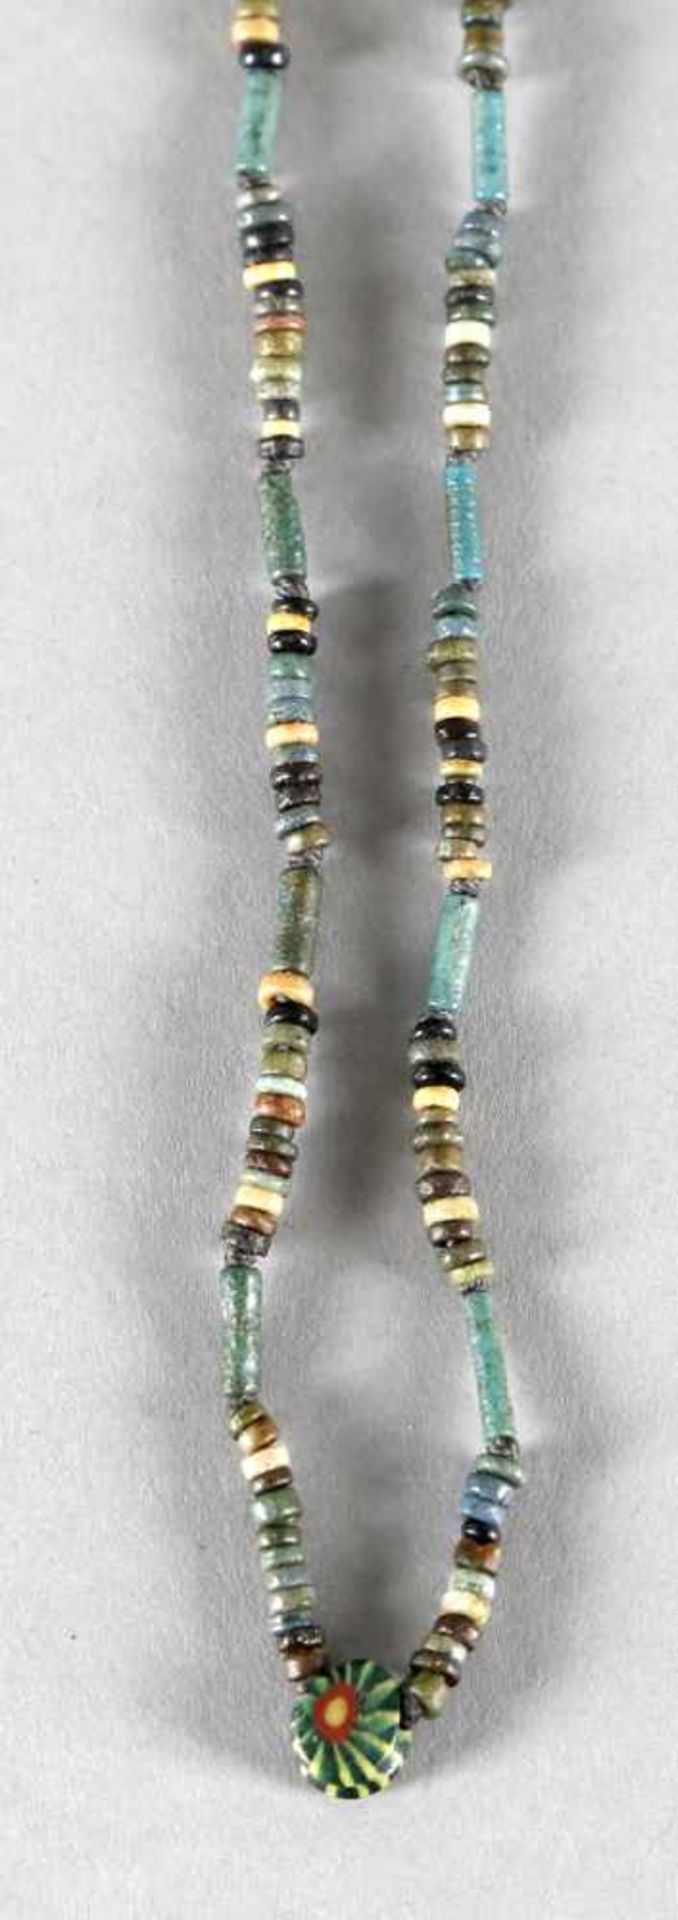 Ägyptische Fayencekette mit Glasperleschmale und längliche Perlen in Blau-, Grün- und Brauntönen,